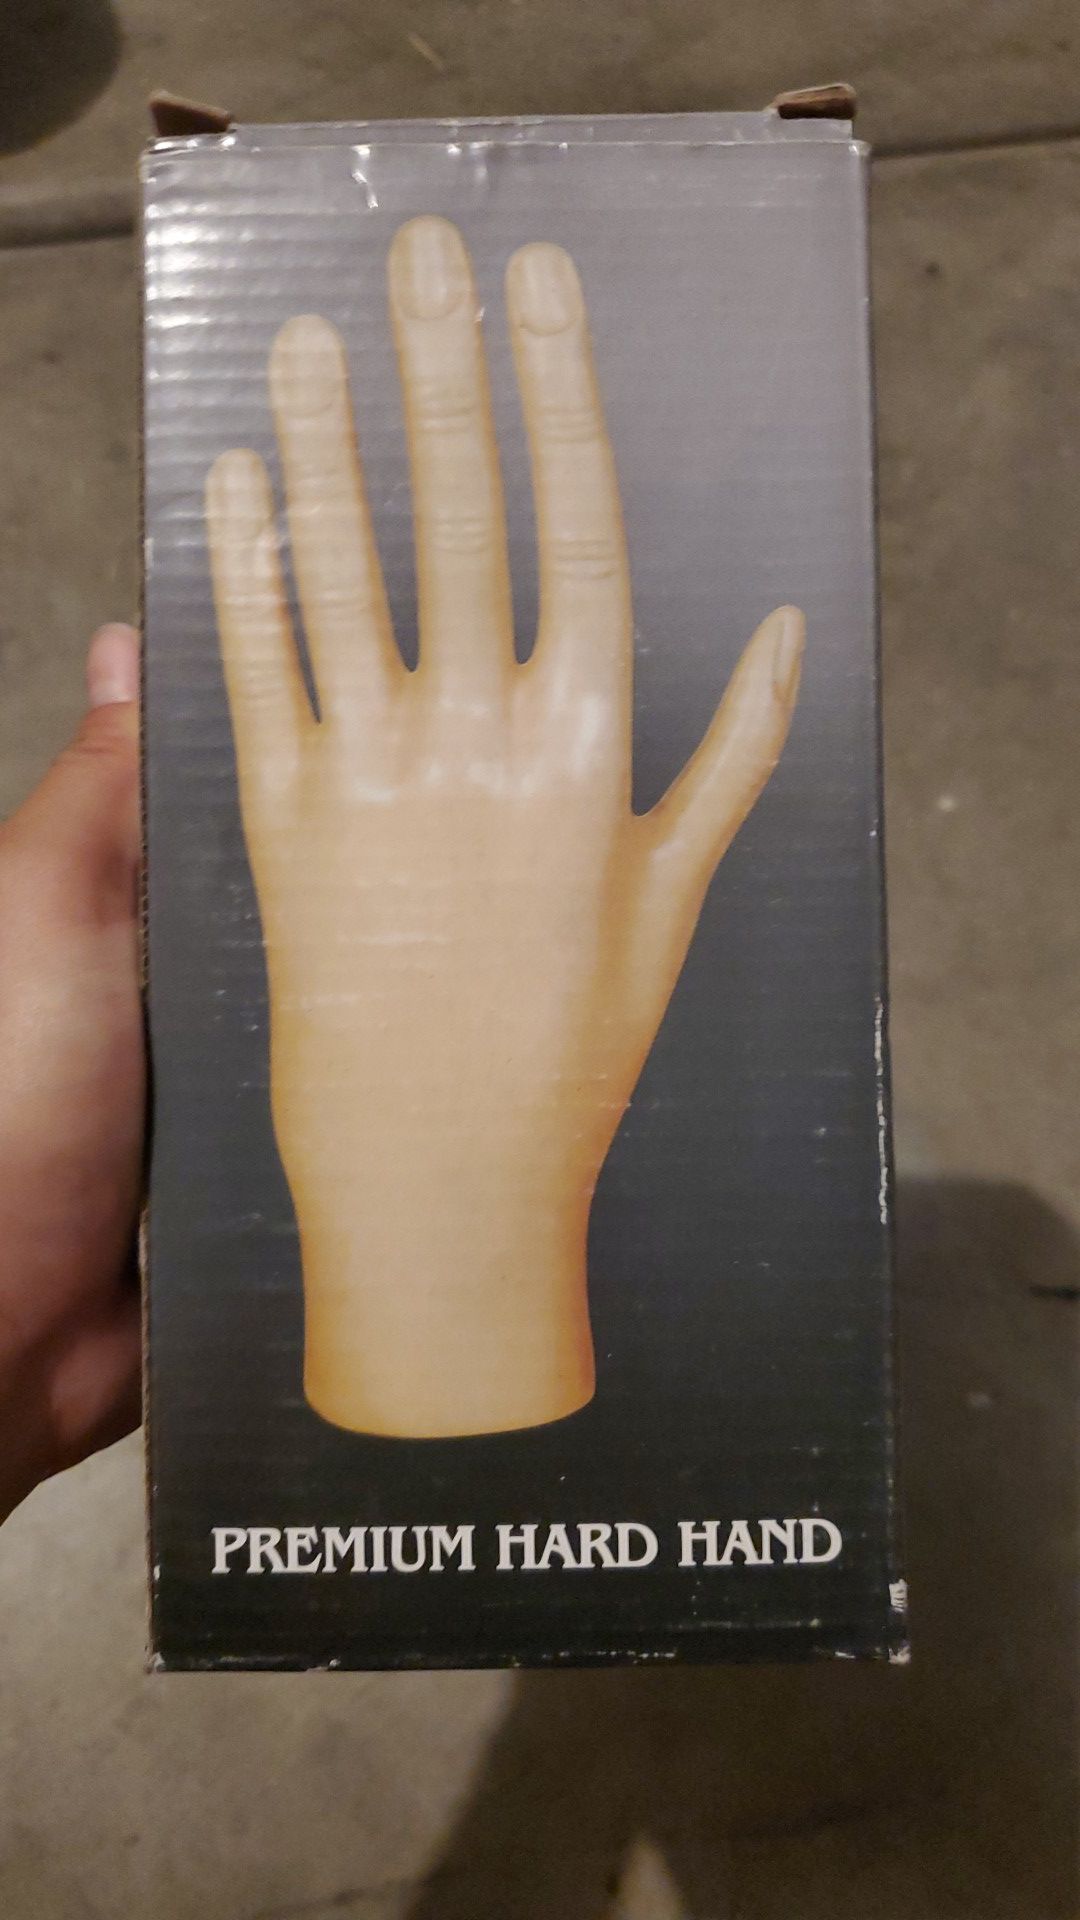 Premium hard hand